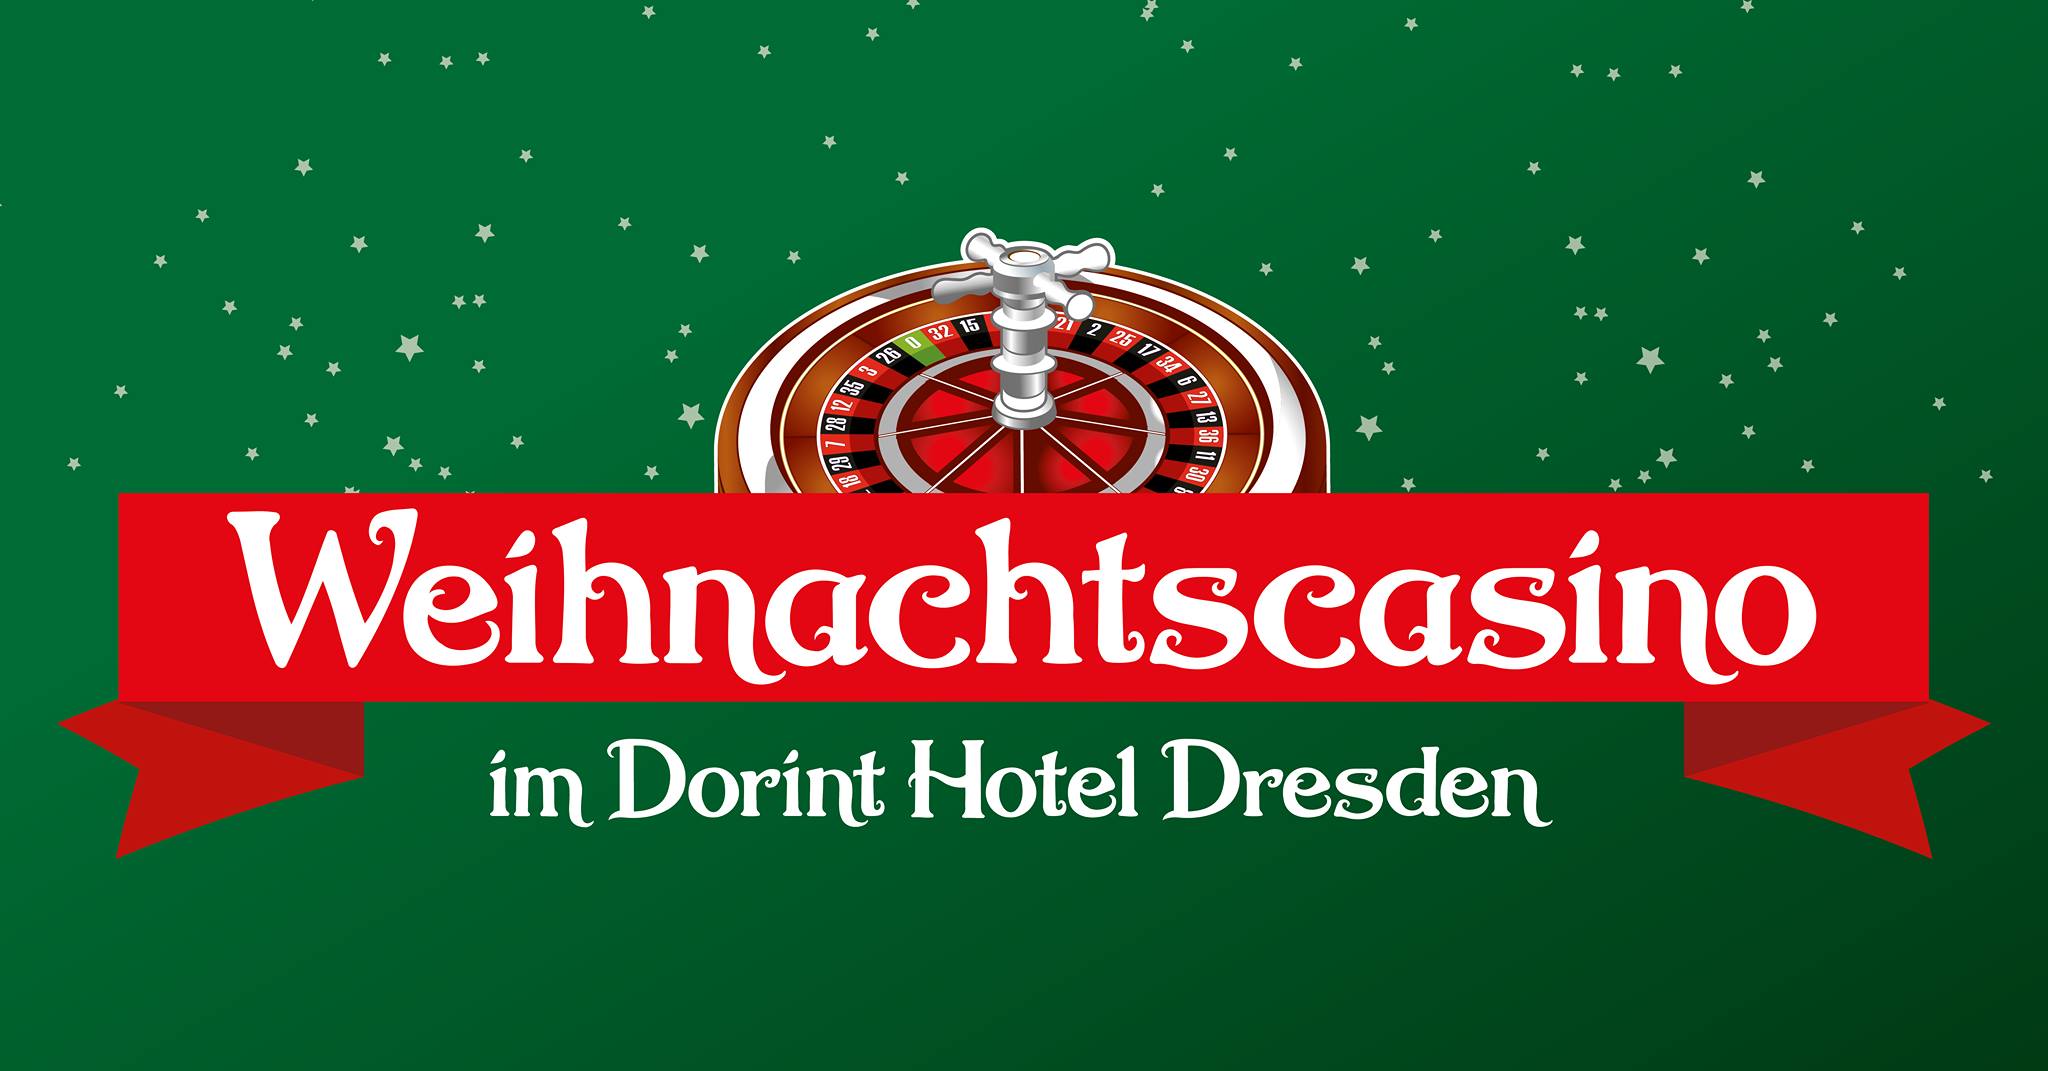 Weihnachtscasino im Dorint Hotel Dresden